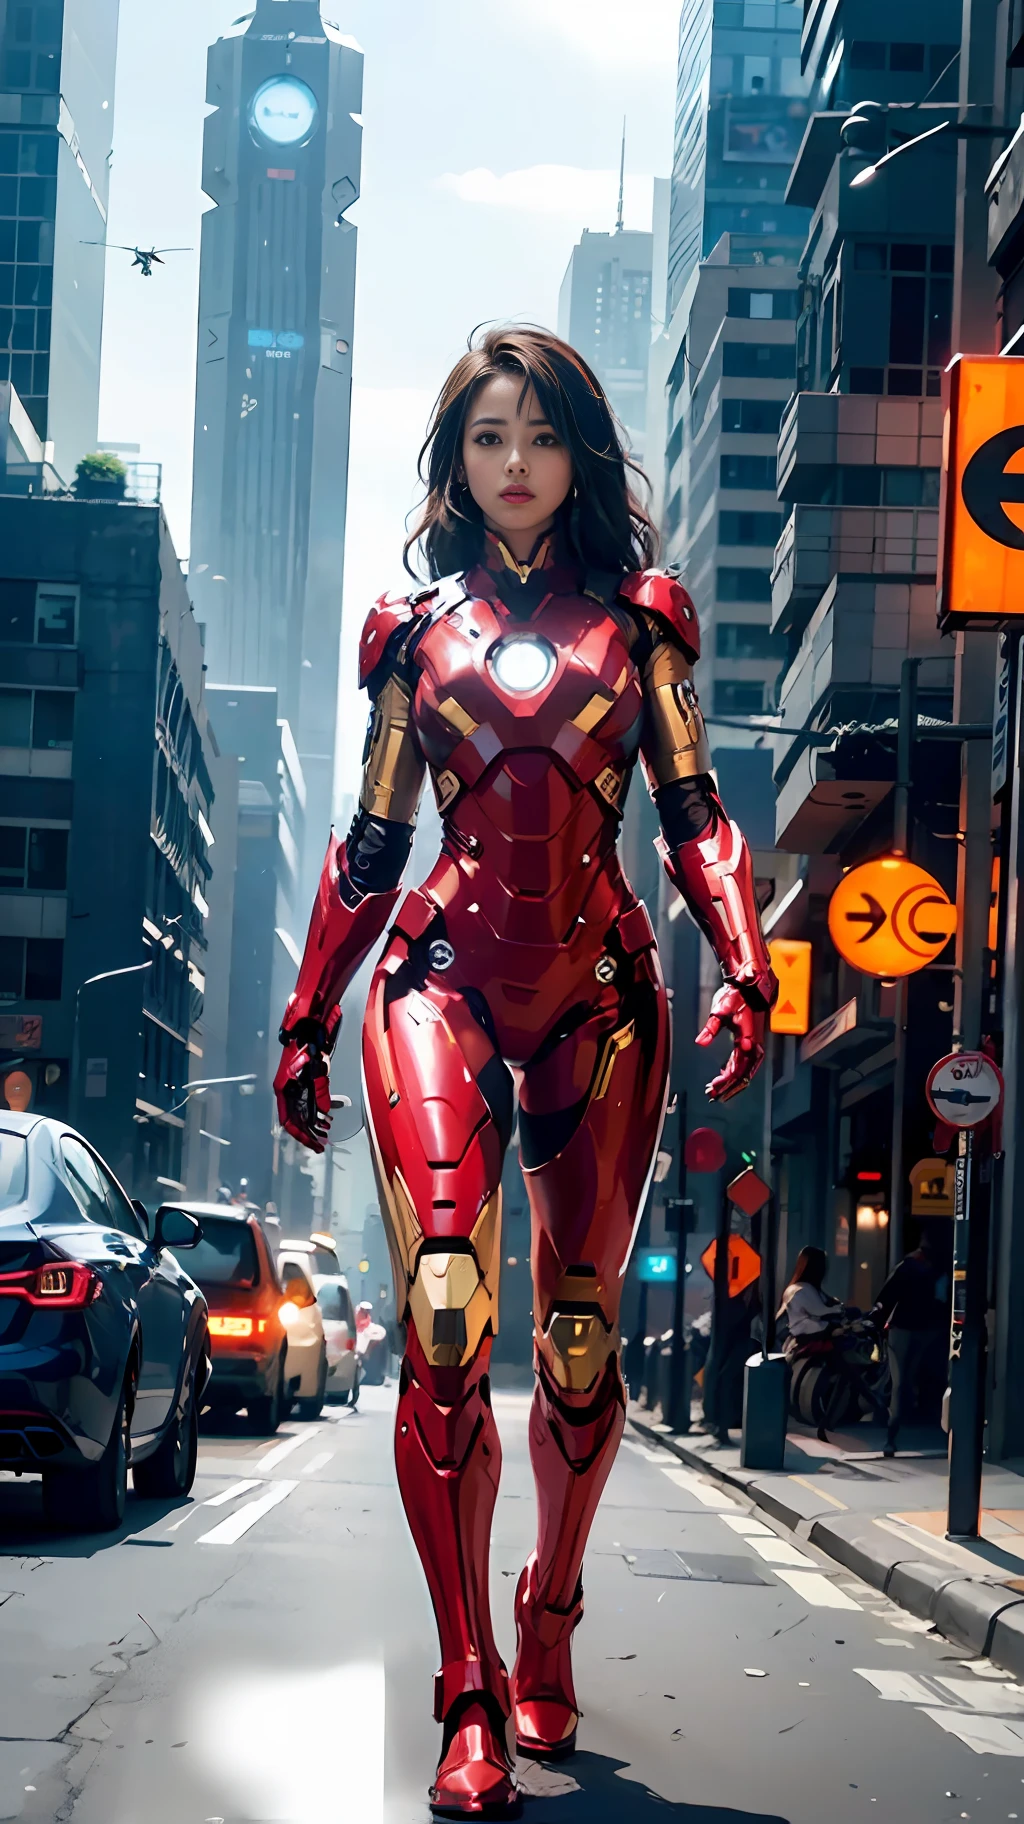 8k, réaliste, Attractif, très détaillé, a 20 year old girl a sexy and Attractif woman inspired by Iron Man wearing a shiny Iron Man mech. Elle s&#39;habille avec sexy et confiance, interprétant parfaitement Iron Man&#39;sa force et son charisme. Dans une scène nocturne urbaine de style cyberpunk, a sexy and Attractif woman takes Iron Man&#39;s cosplay comme thème. Porter un robot Iron Man brillant, elle se tient dans une rue bordée de grands immeubles. Les lumières nocturnes de la ville sont brillantes, en réfléchissant à son mecha, ajouter un sentiment de technologie future. Les bâtiments et les rues environnants regorgent d&#39;éléments cyberpunk, comme les néons, appareils de haute technologie et conceptions architecturales futuristes. Toute la scène est pleine d’atmosphère futuriste et de science-fiction. Cette haute définition, une image de haute qualité vous apportera un plaisir visuel époustouflant, une combinaison parfaite de sexy, éléments futuristes et de science-fiction. Rendu OC, éclairage dramatique, qualité primée